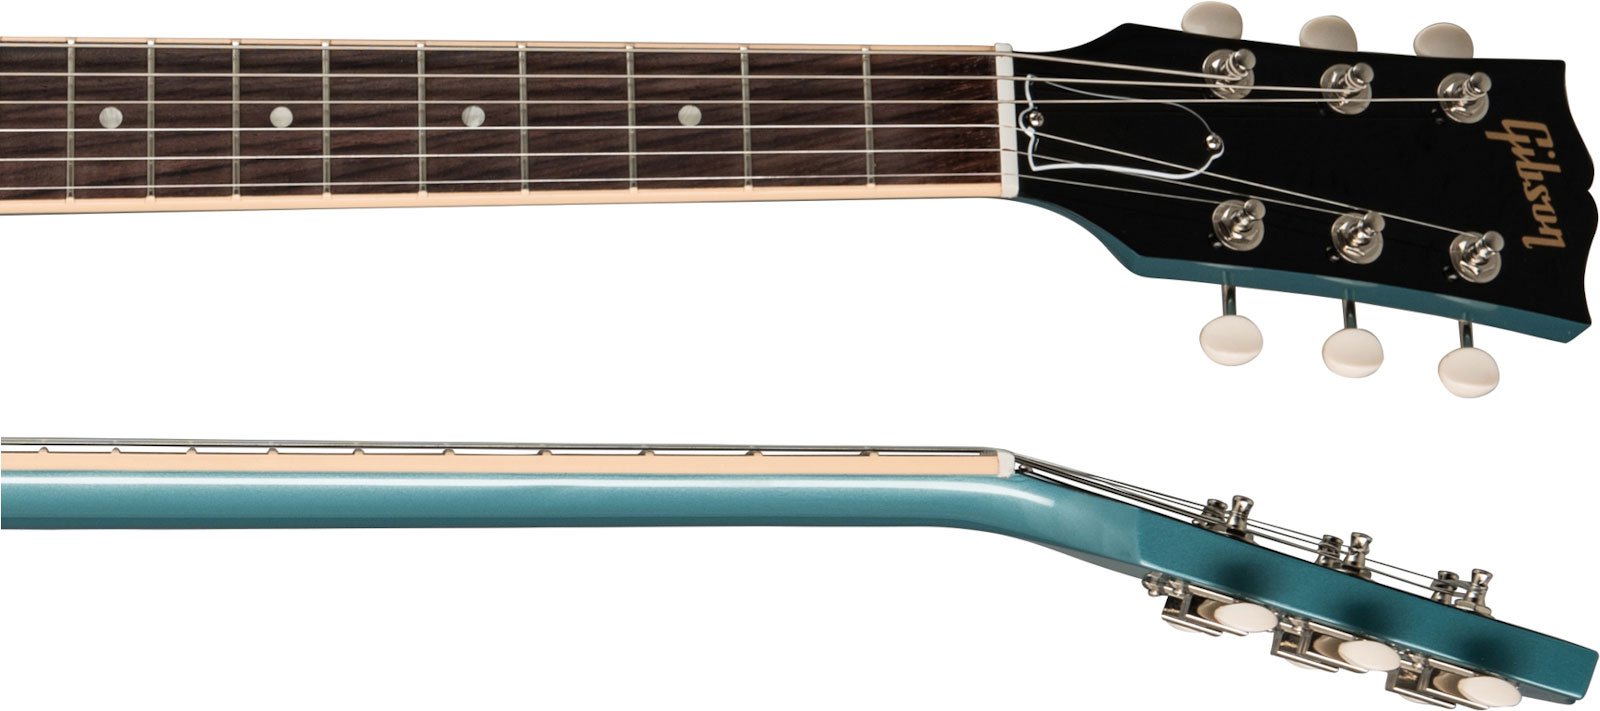 Gibson Sg Special Original P90 - Pelham Blue - Guitarra electrica retro rock - Variation 3